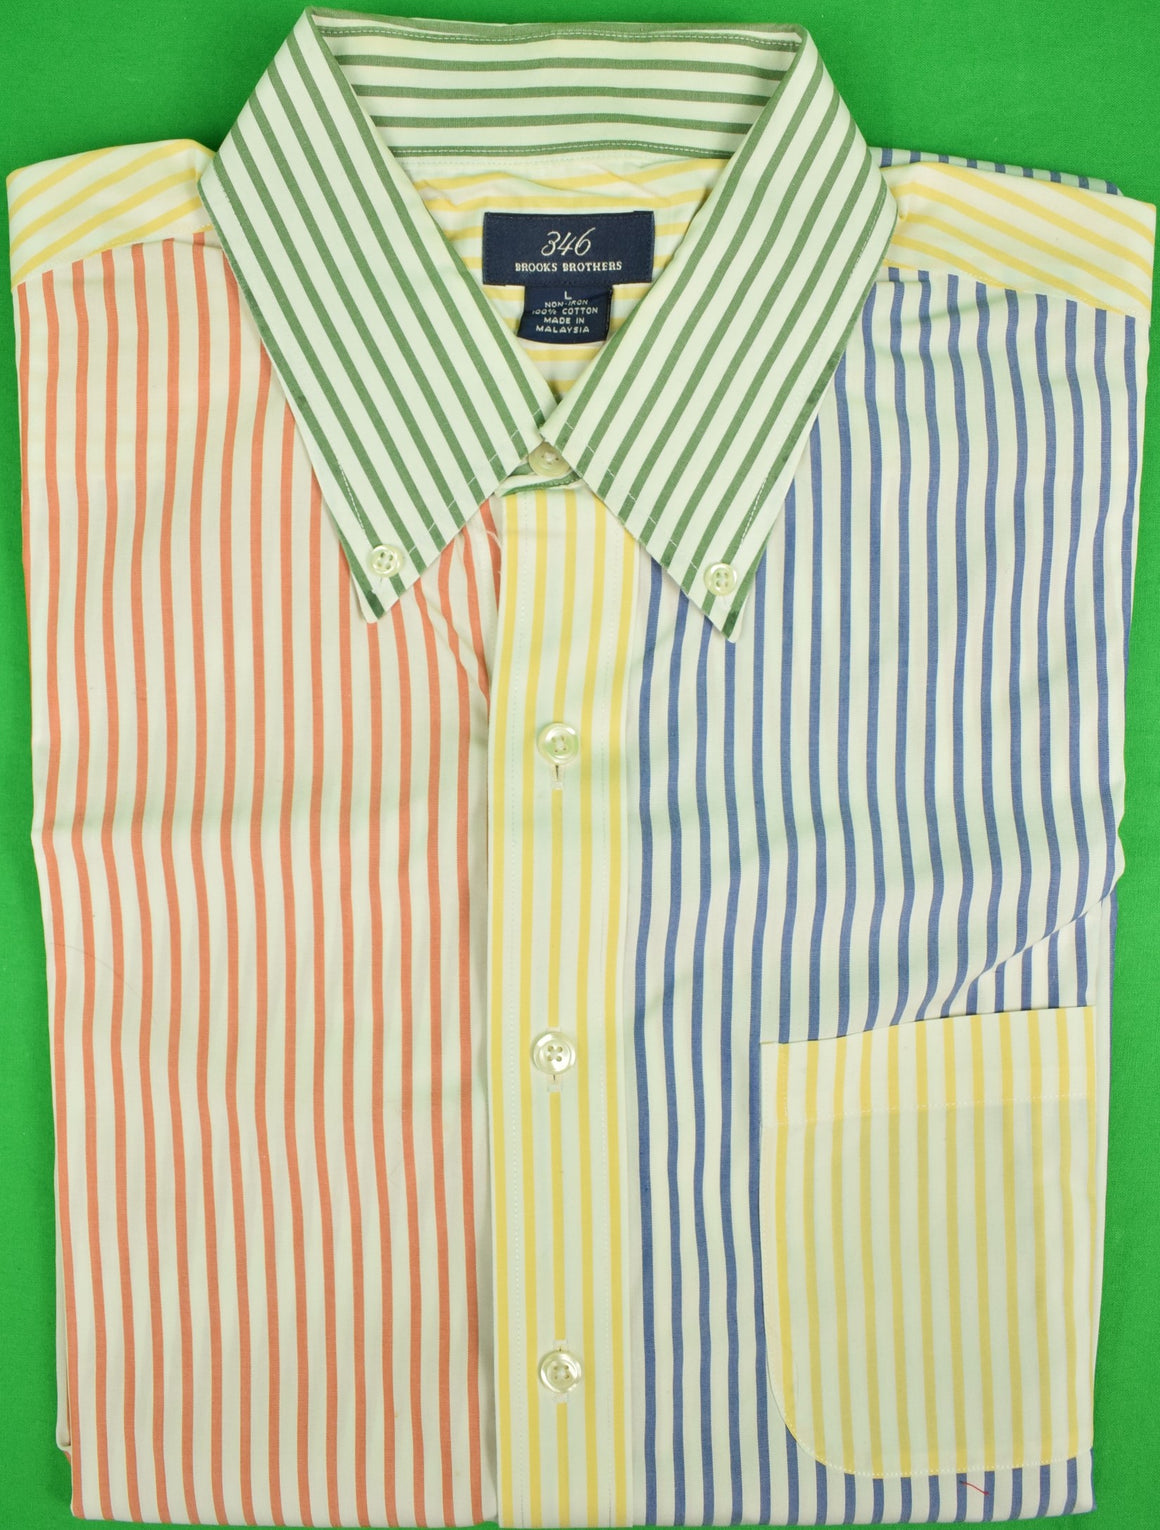 Brooks Brothers 346 L/S B/D Multi-Sripe 'Fun' Shirt Sz: L